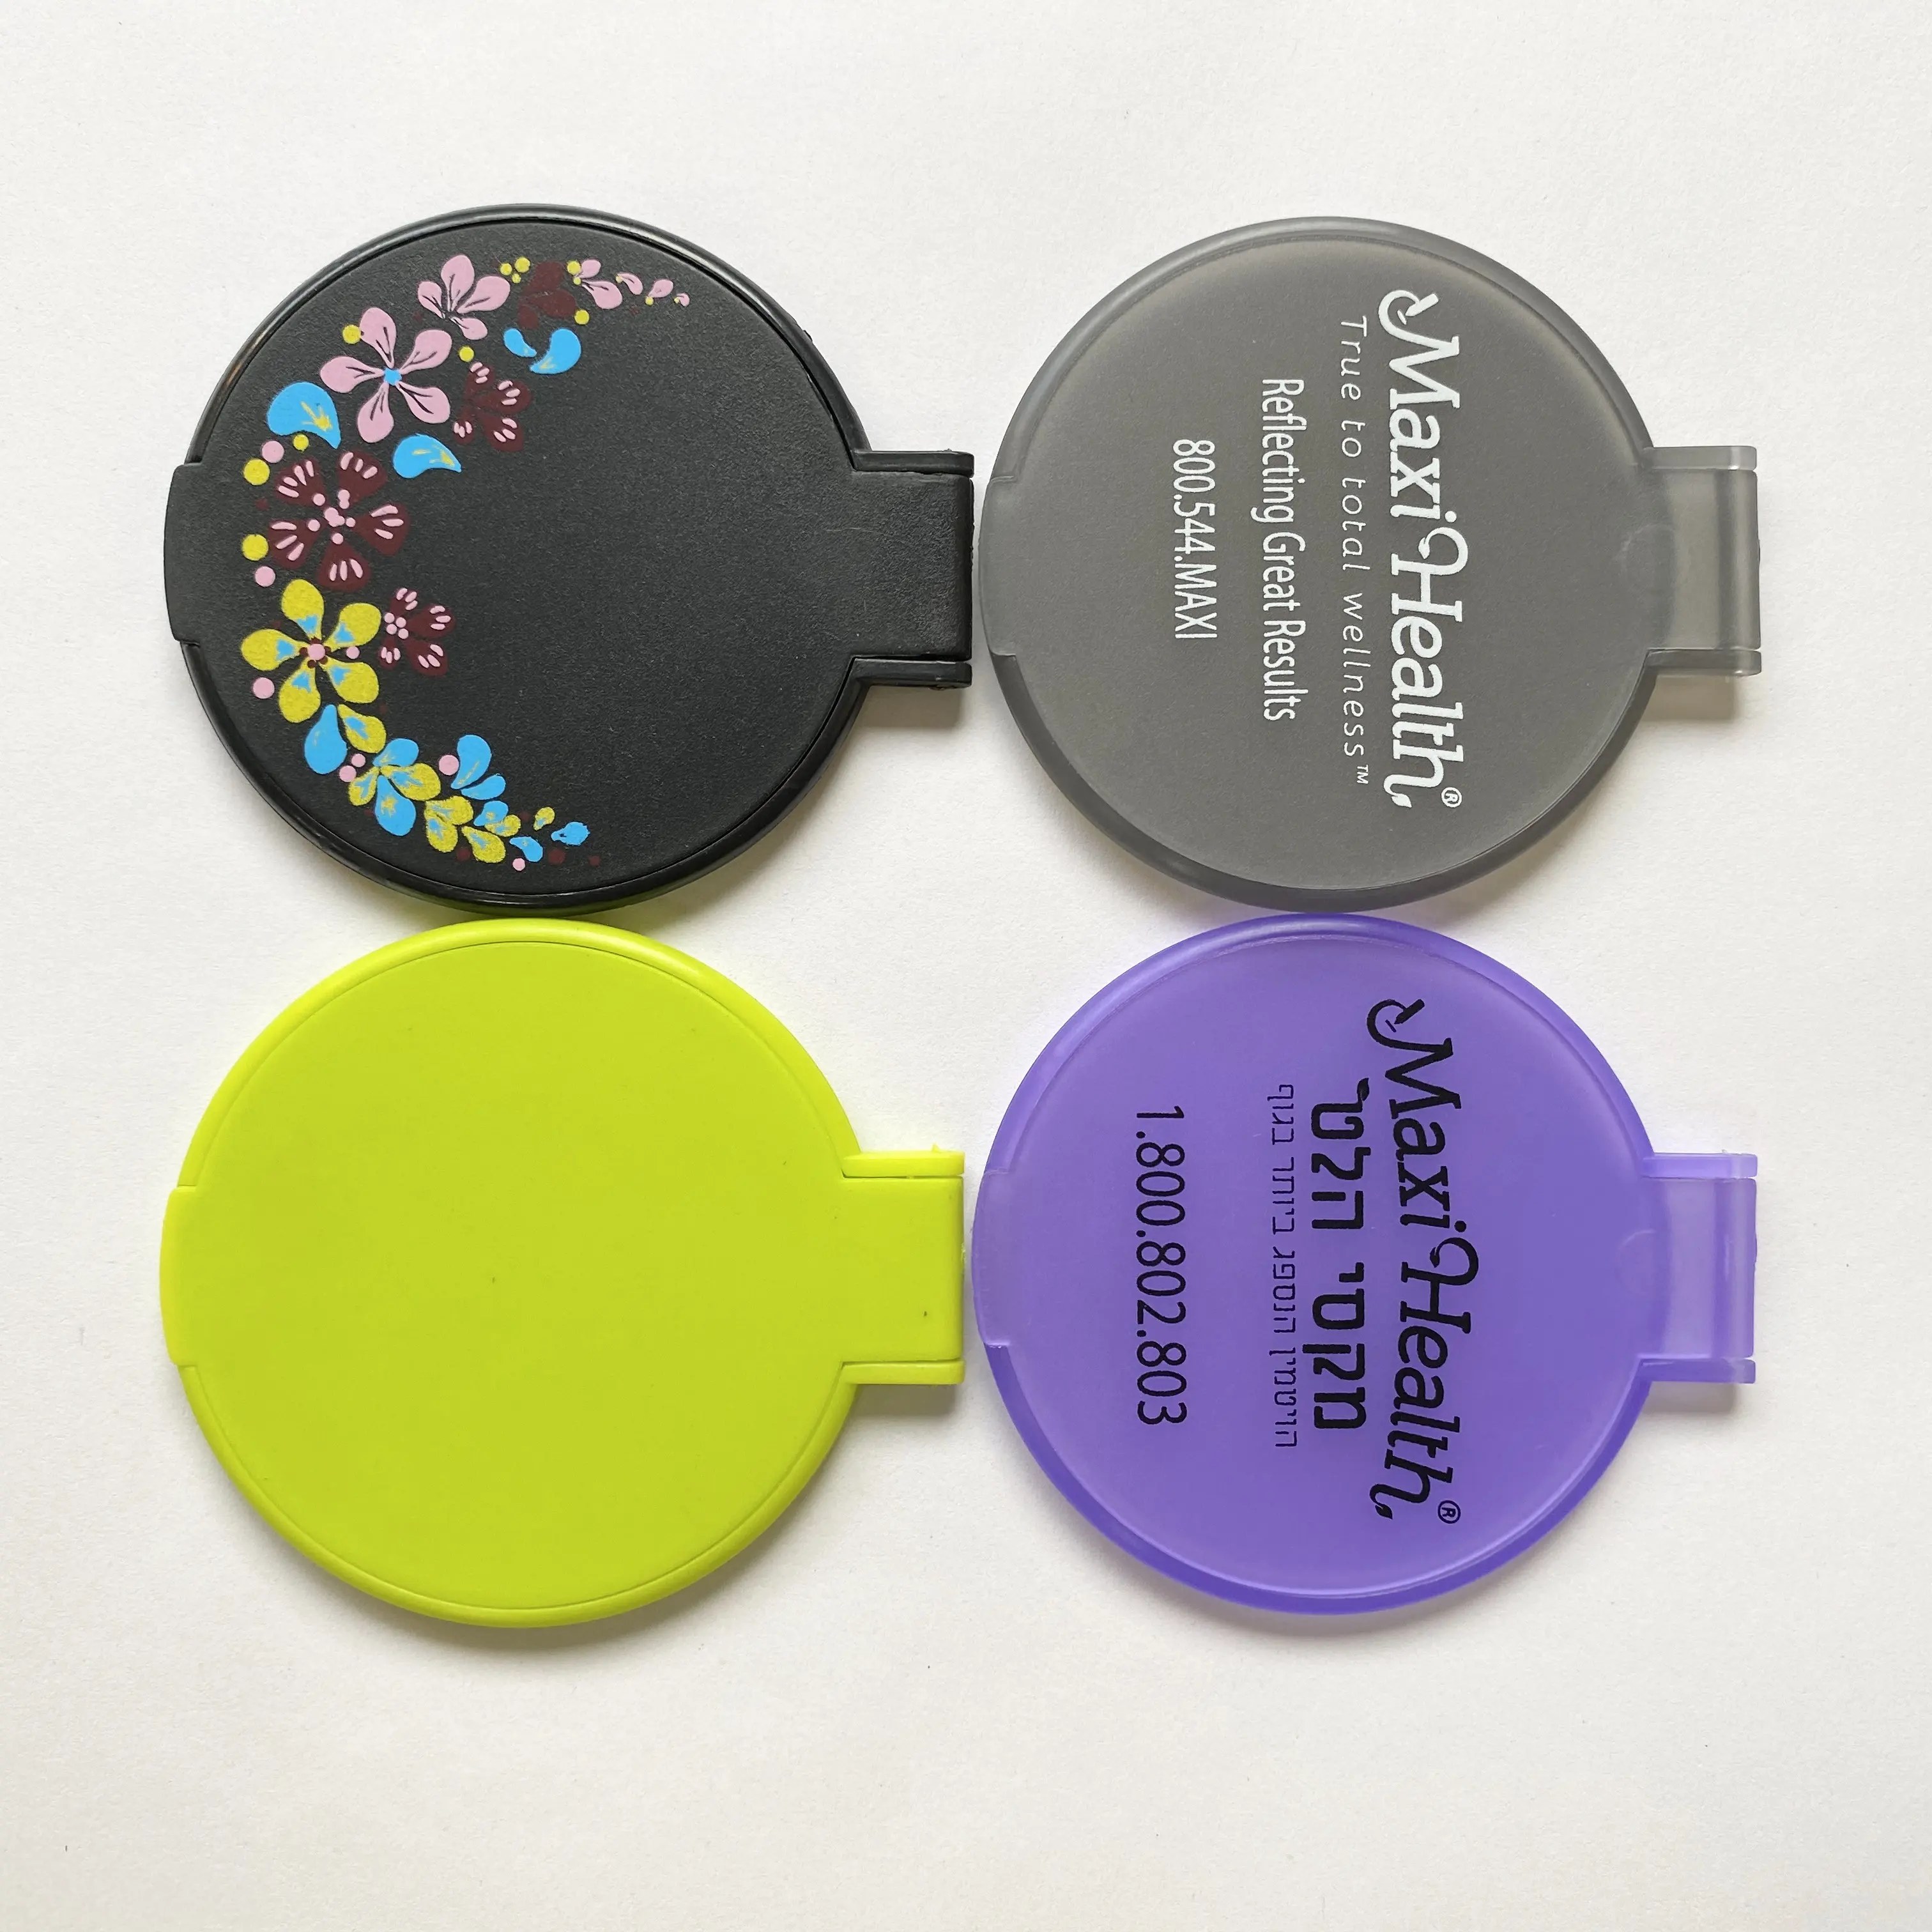 Petits cadeaux pour les invités publicité personnalisée promotion pliable rond simple face mini miroir portable en plastique portable